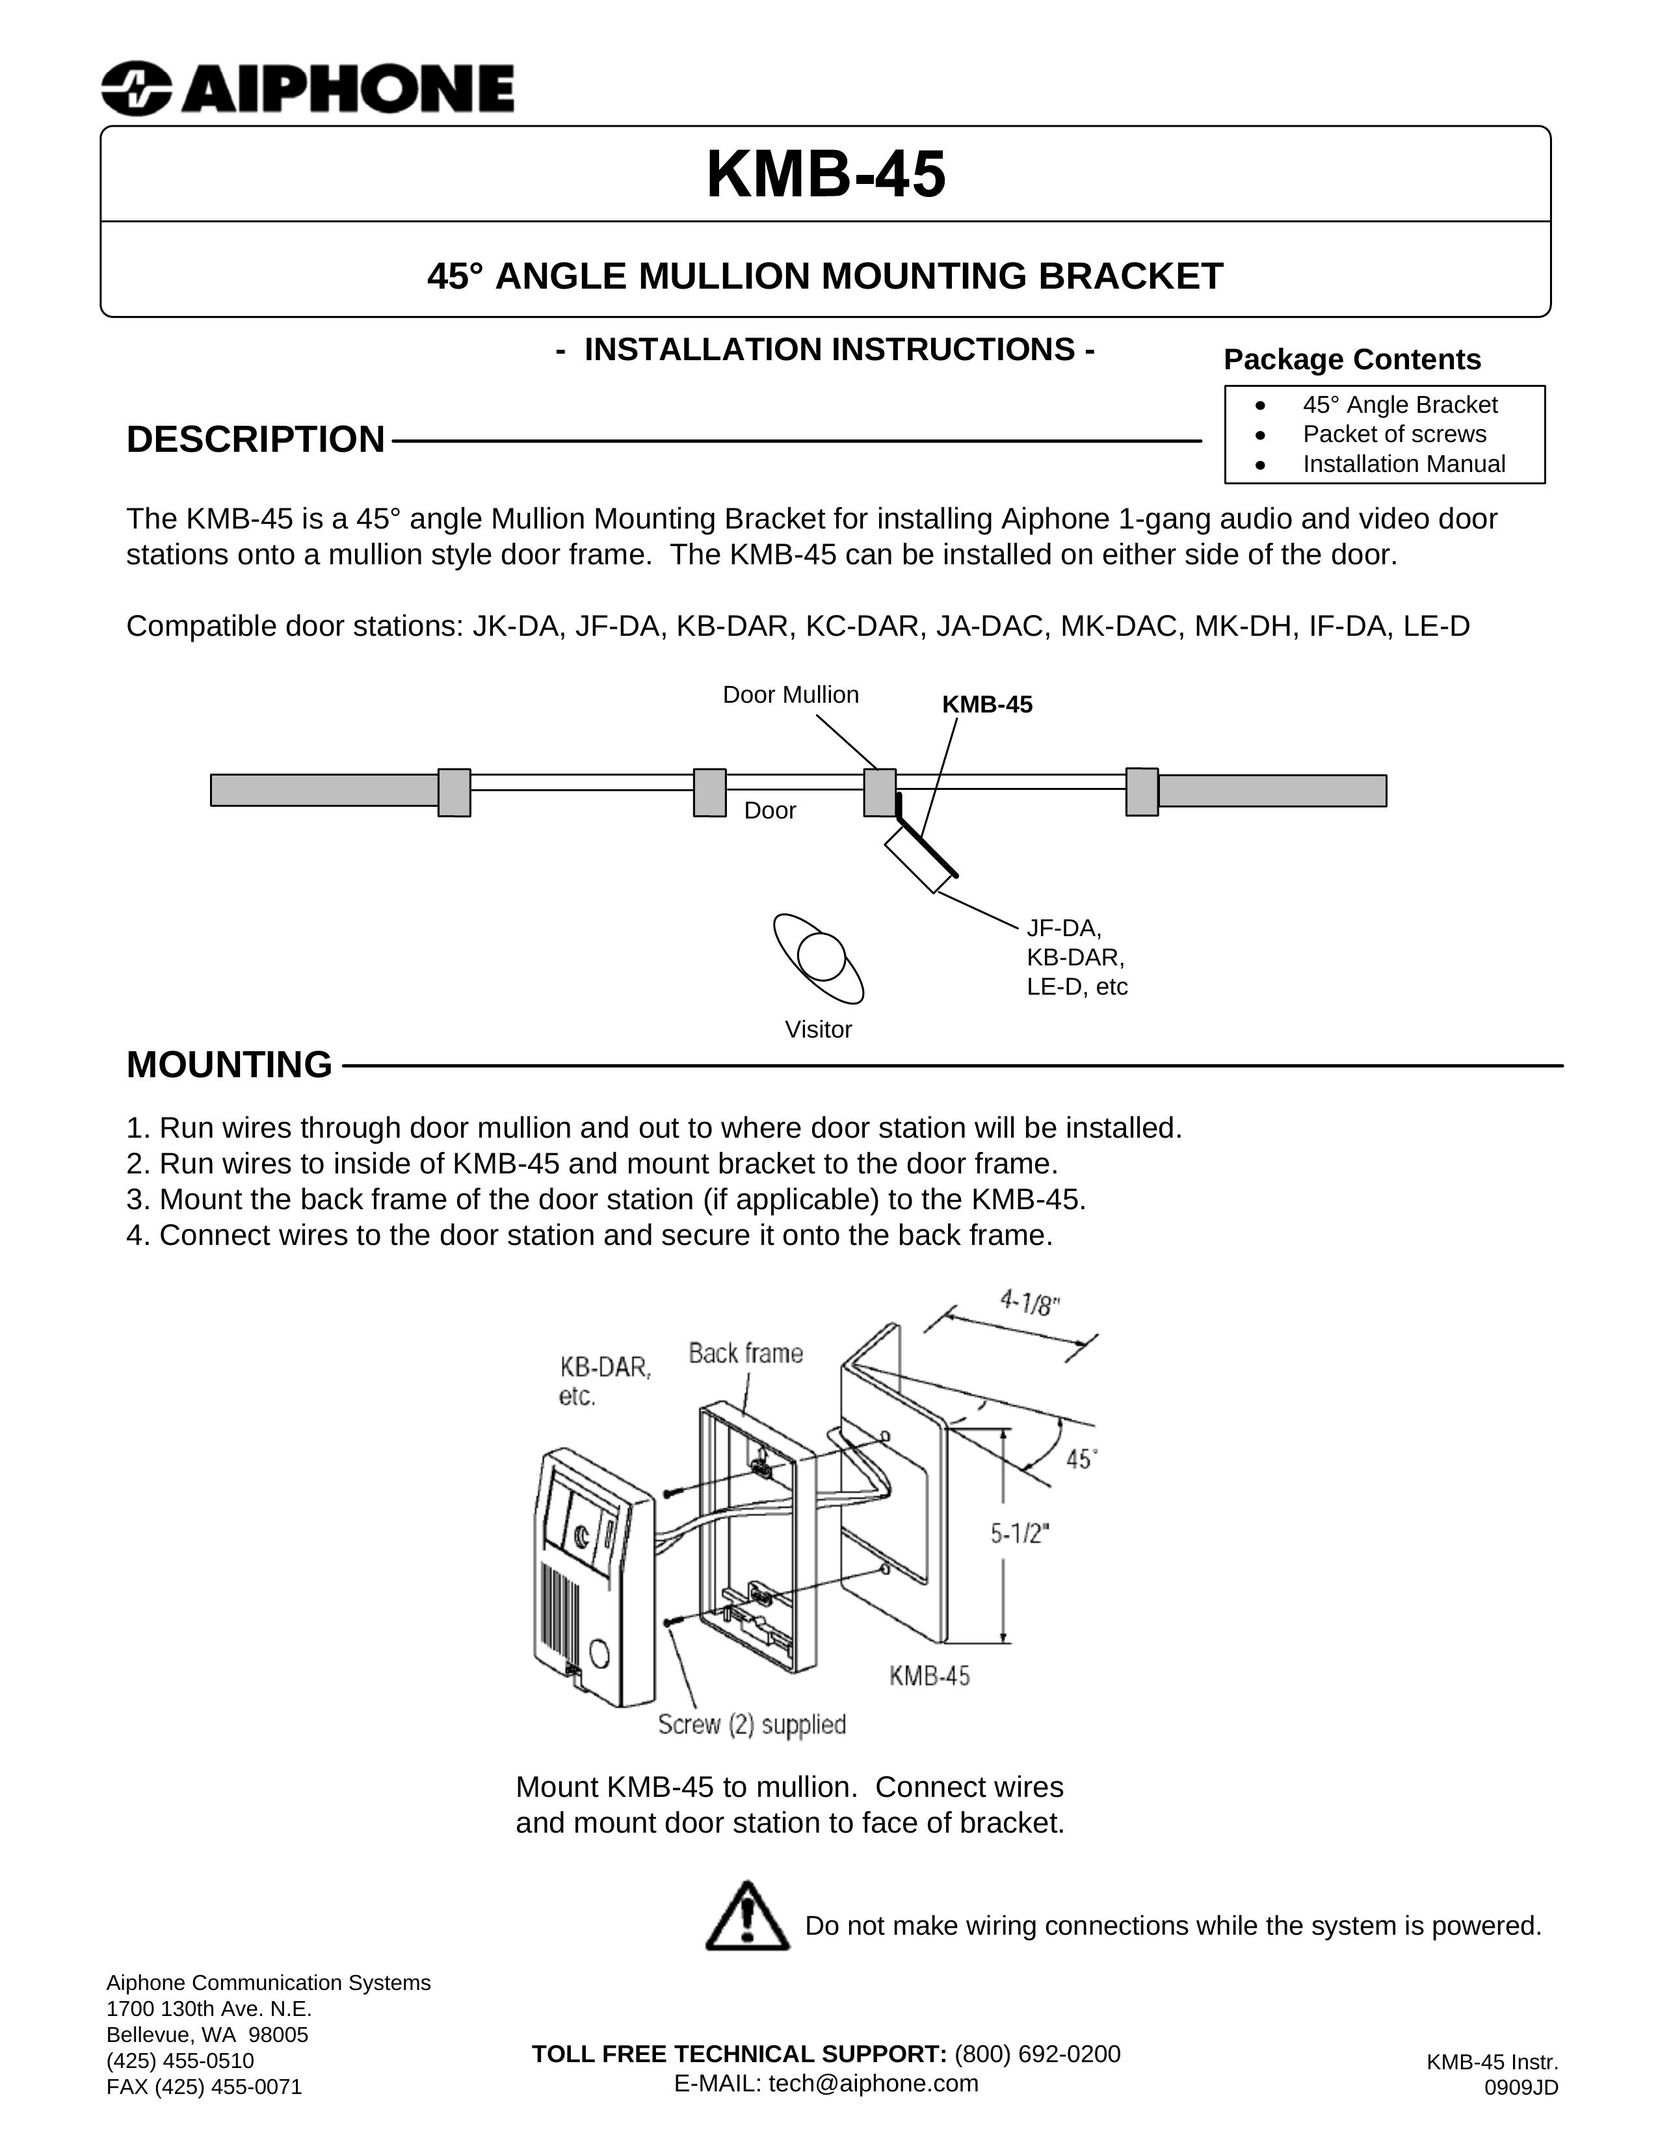 Aiphone KMB-45 TV Mount User Manual